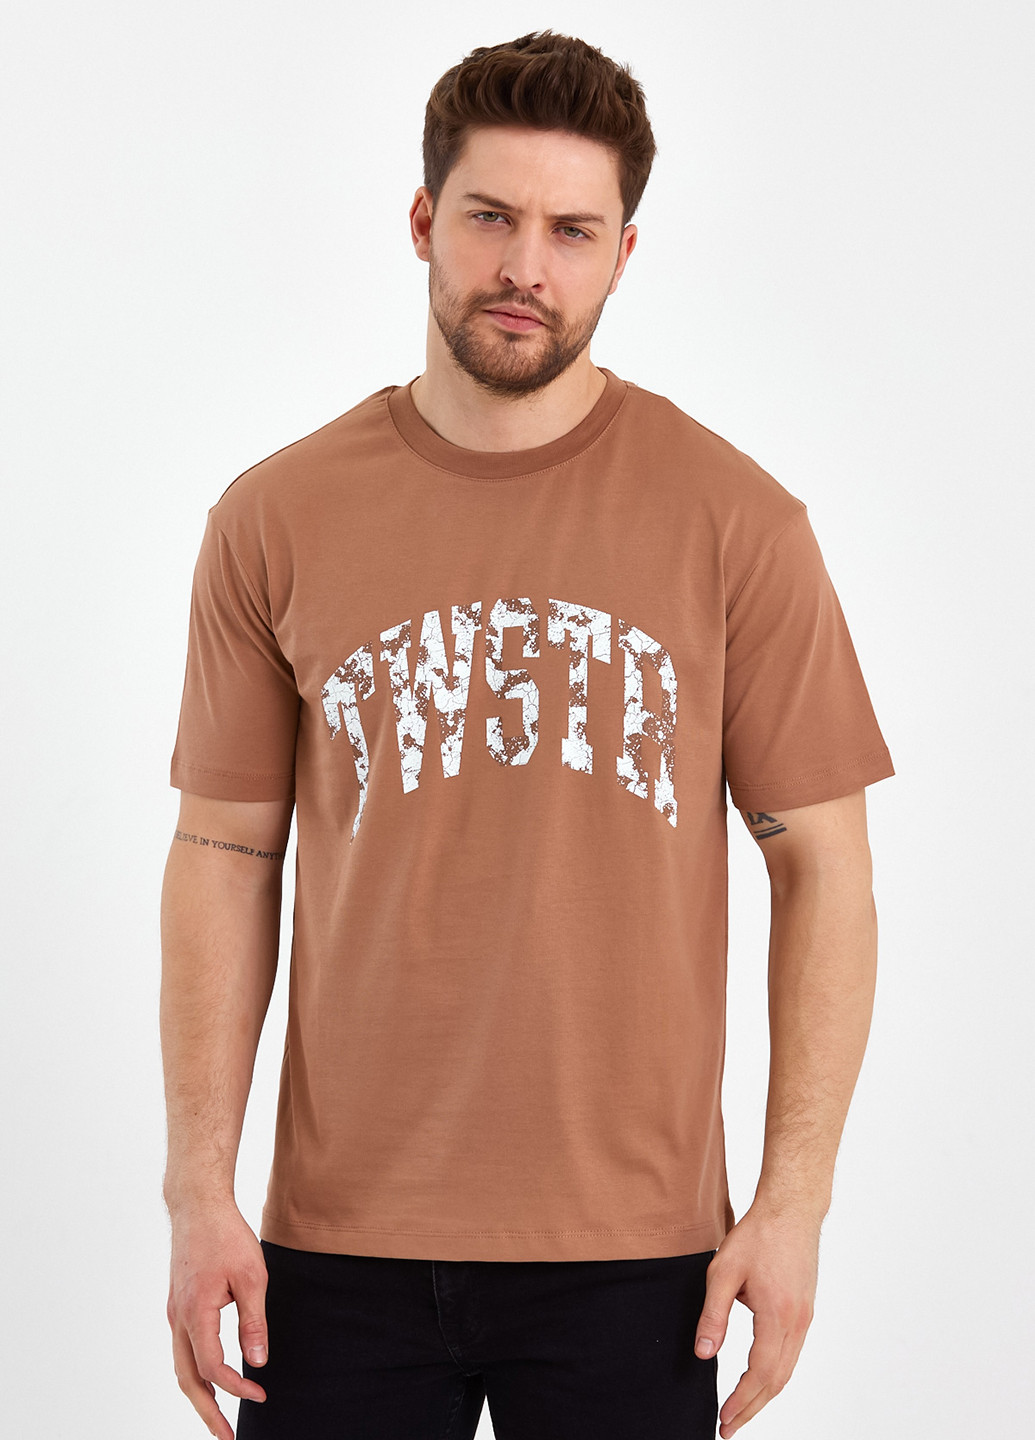 Темно-бежева футболка Trend Collection